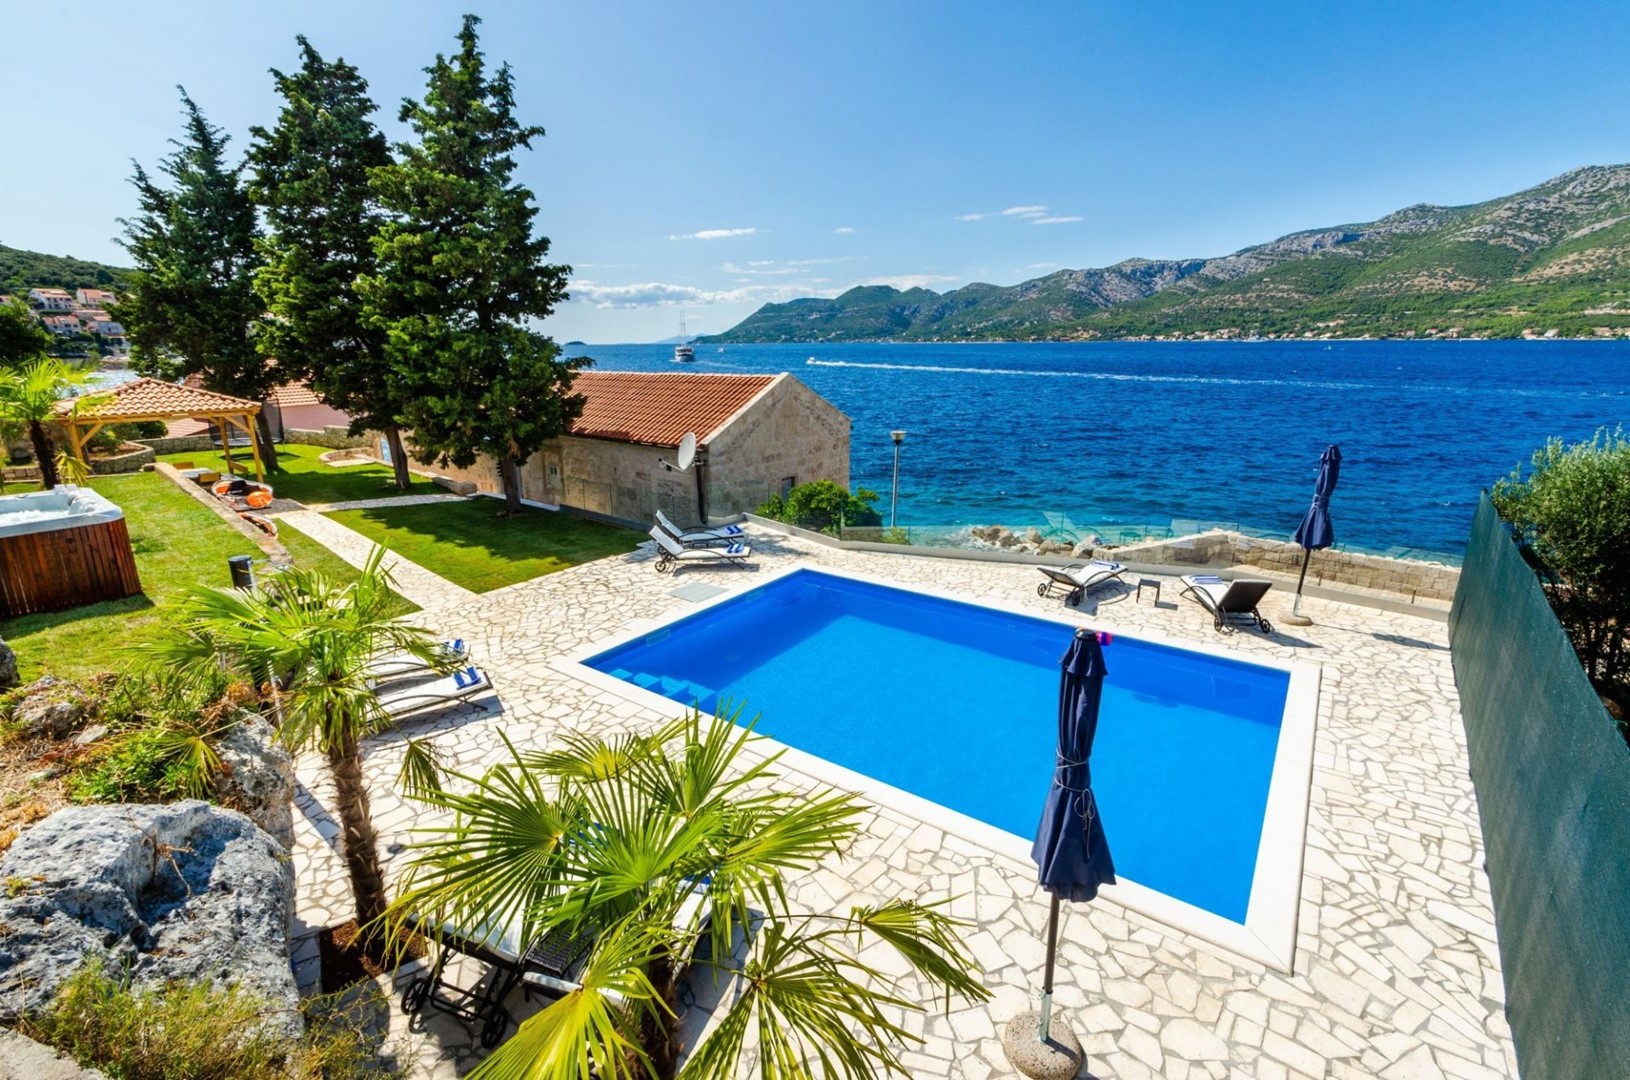 Kroatien Luxus-Ferienvilla Gabriela mit privatem Pool, Fitnessraum, Whirlpool neben dem Kiesstrand auf Korčula